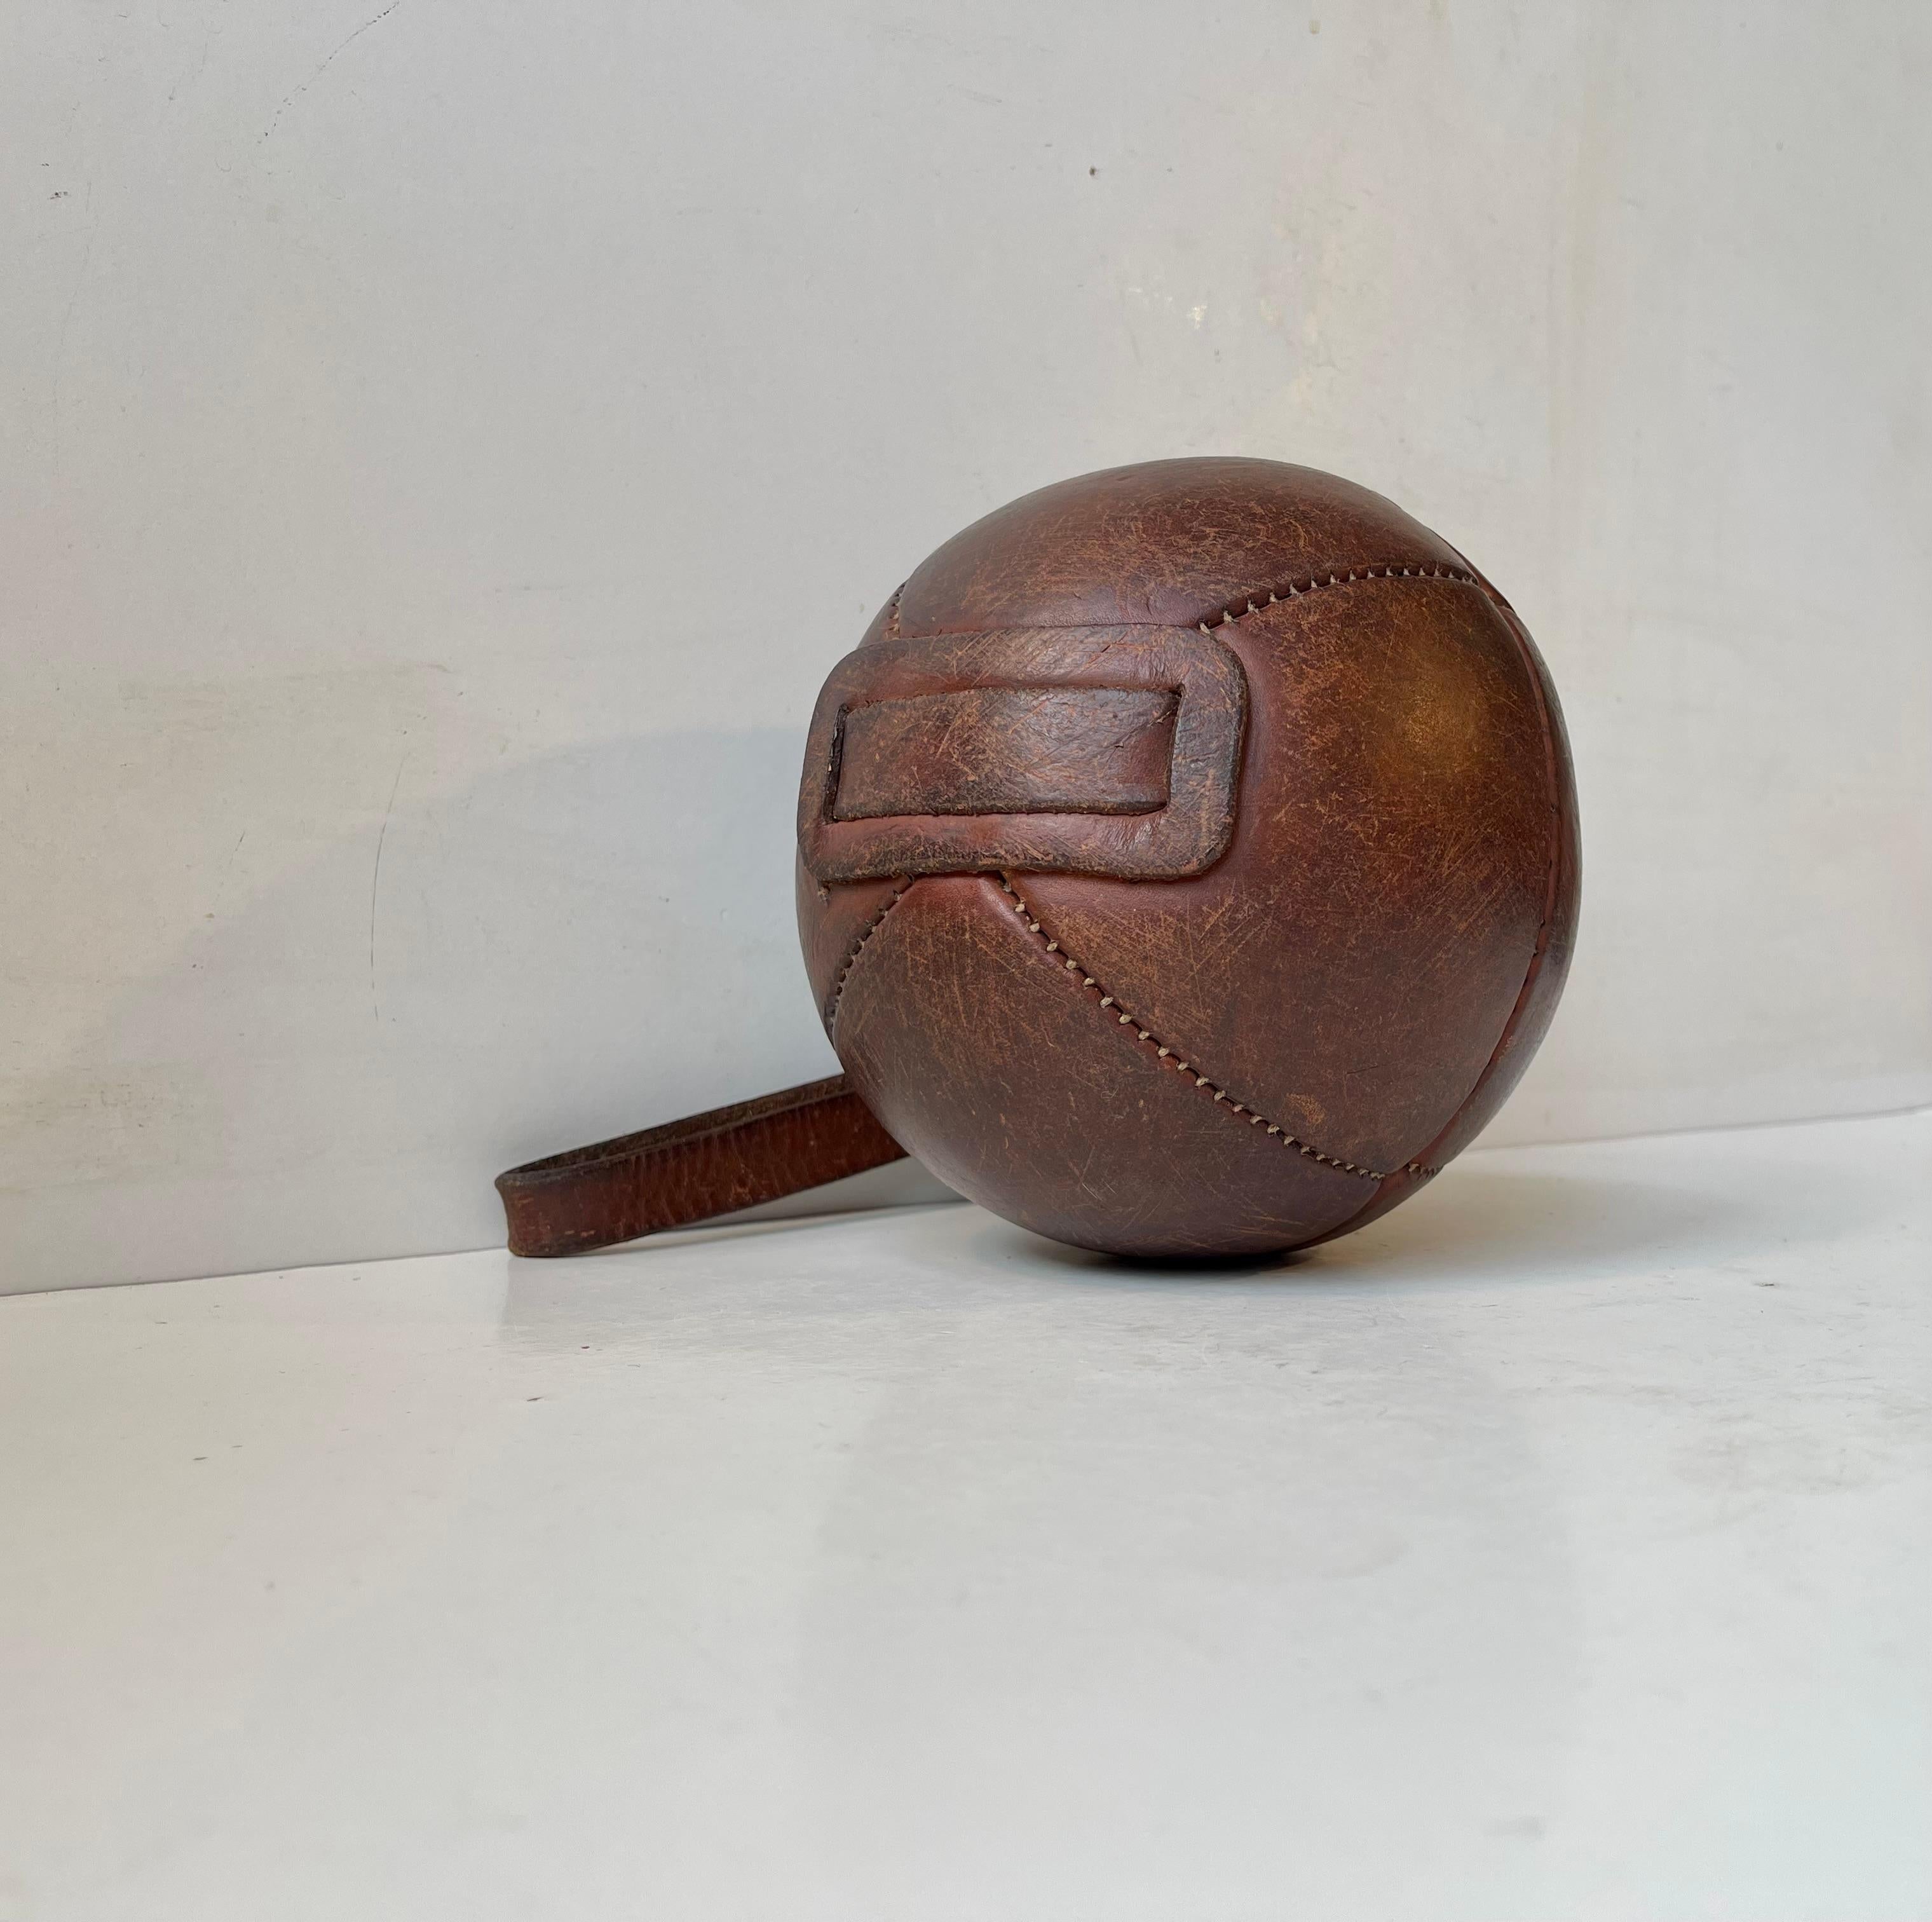 Une boule décorative en cuir tanné patiné. Ils étaient à l'origine utilisés comme fronde, balle médicale ou balle de boxe. Cet exemplaire a été fabriqué à la main en France vers 1930-40 et se trouve dans un état très authentique et satisfaisant.